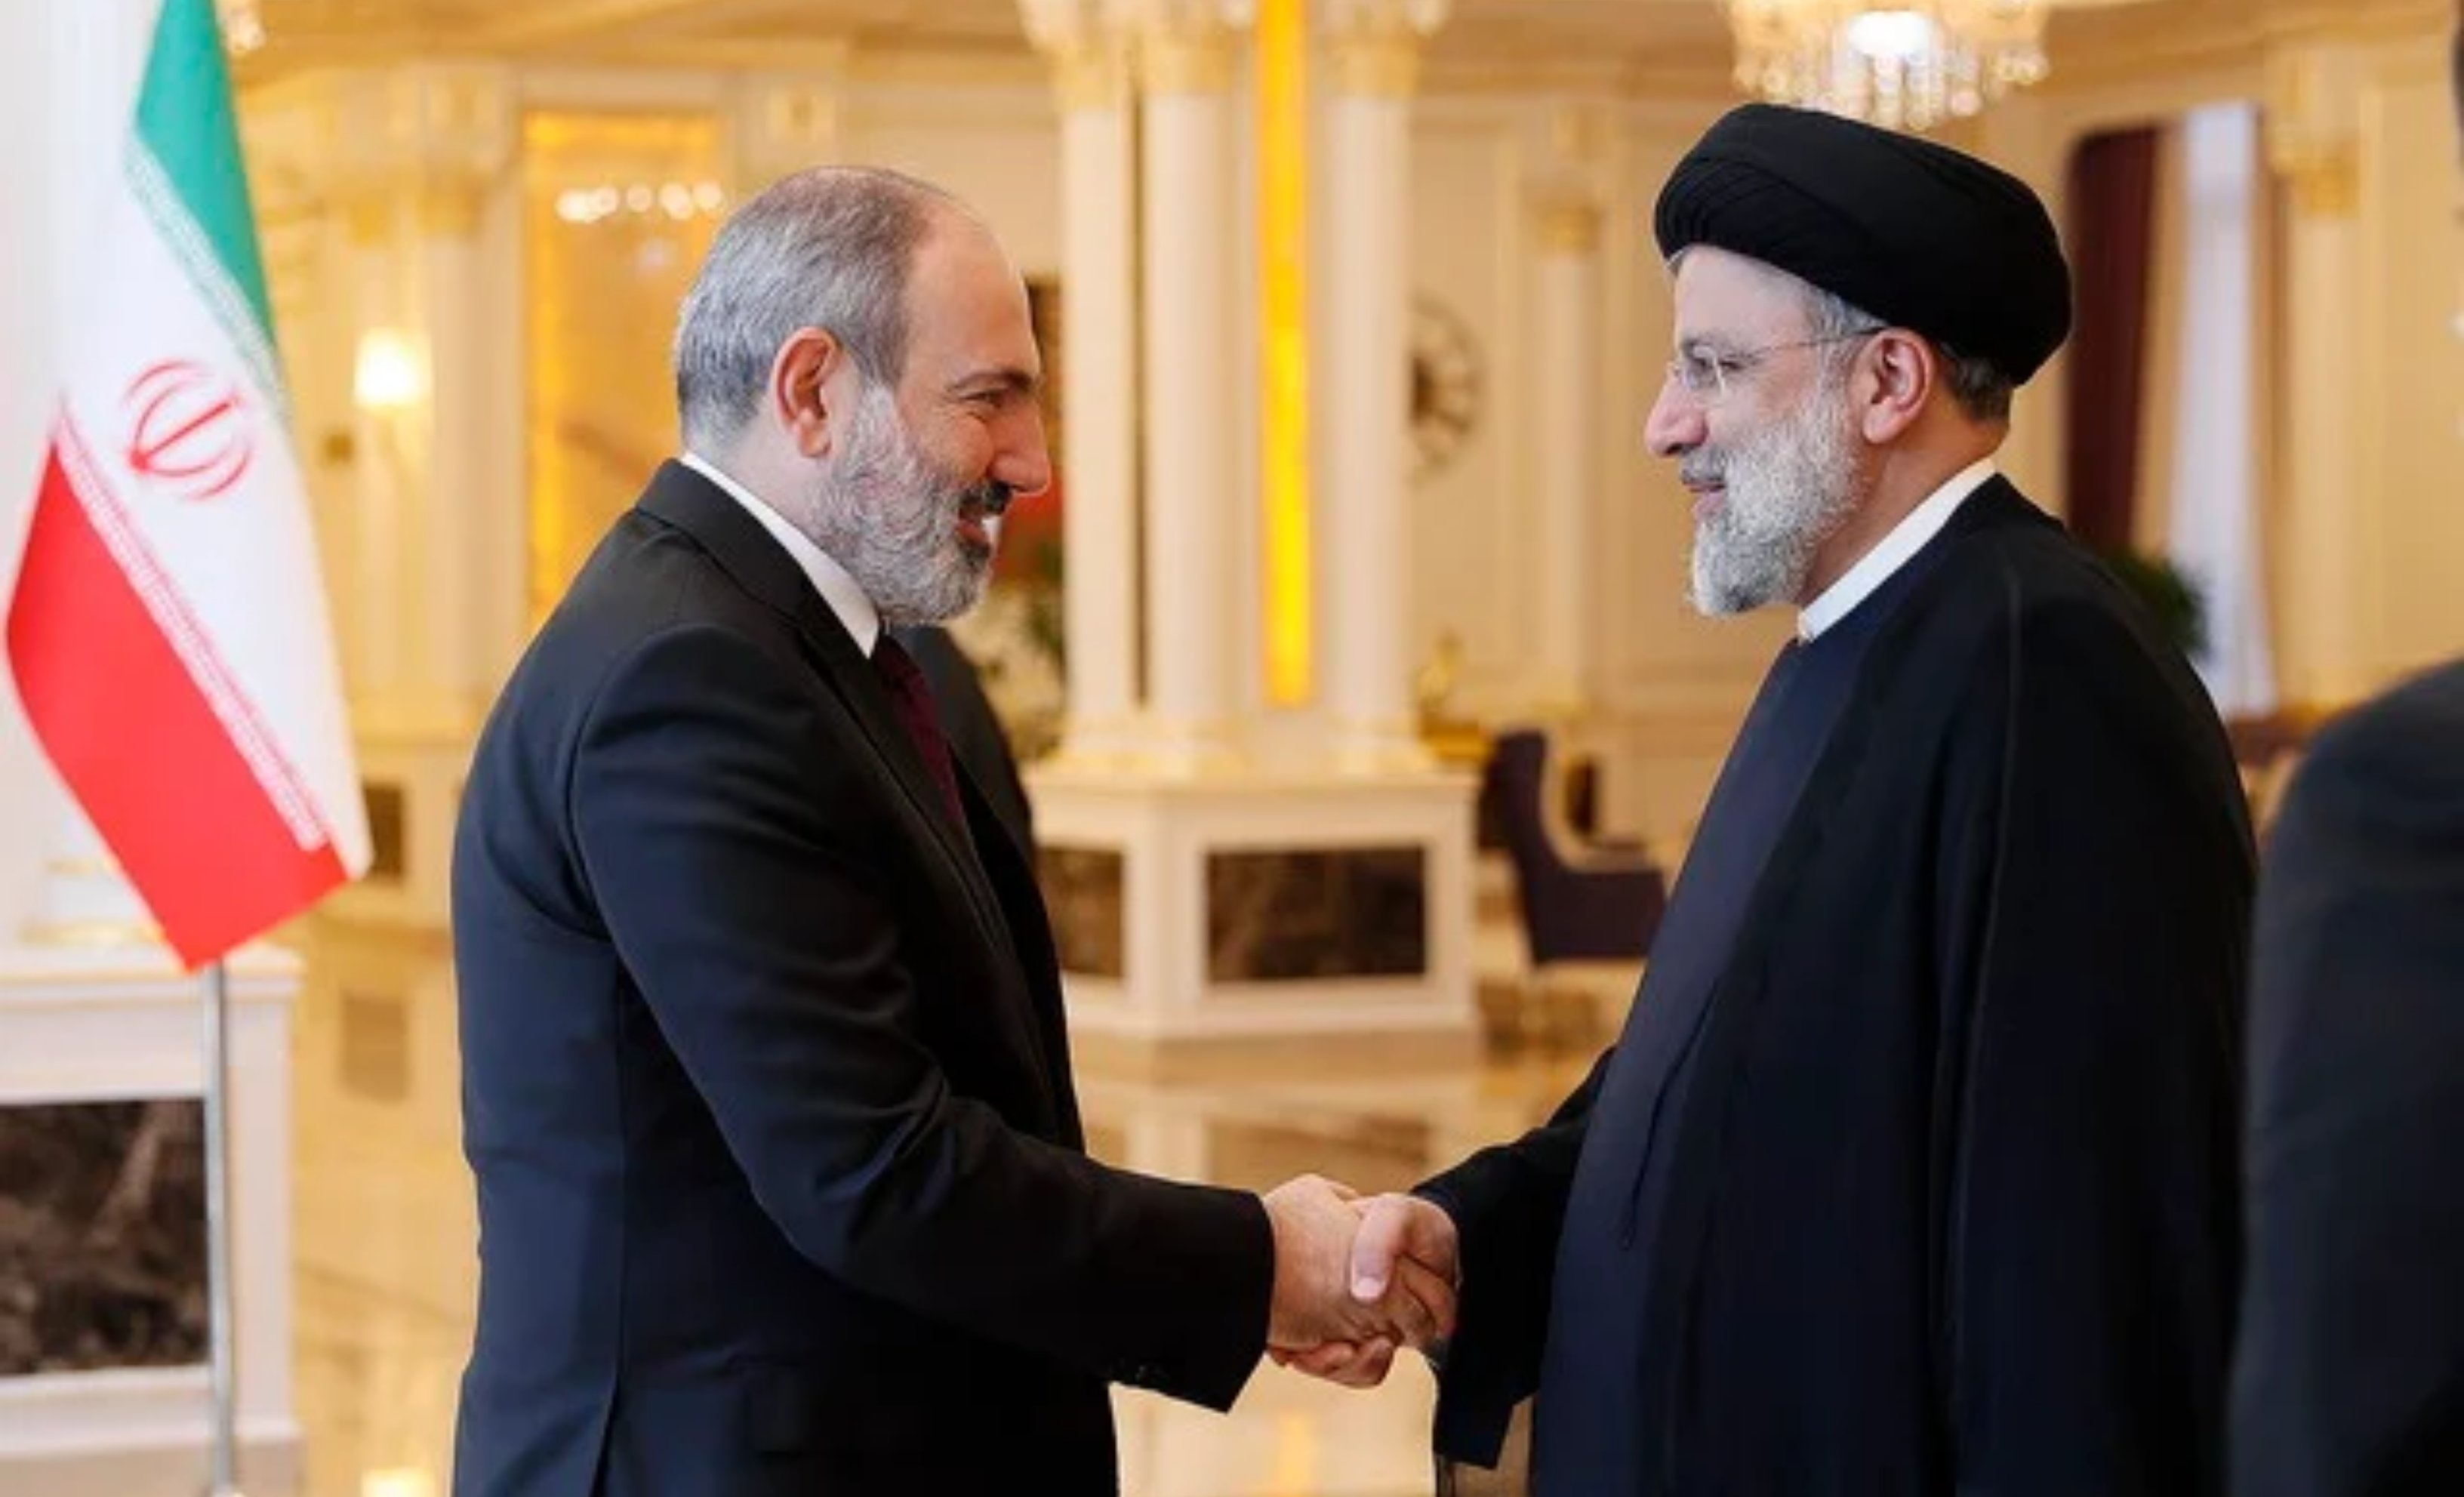 Իրանի նախագահը անդրադարձել է «Խաղաղության խաչմերուկ» նախագծին